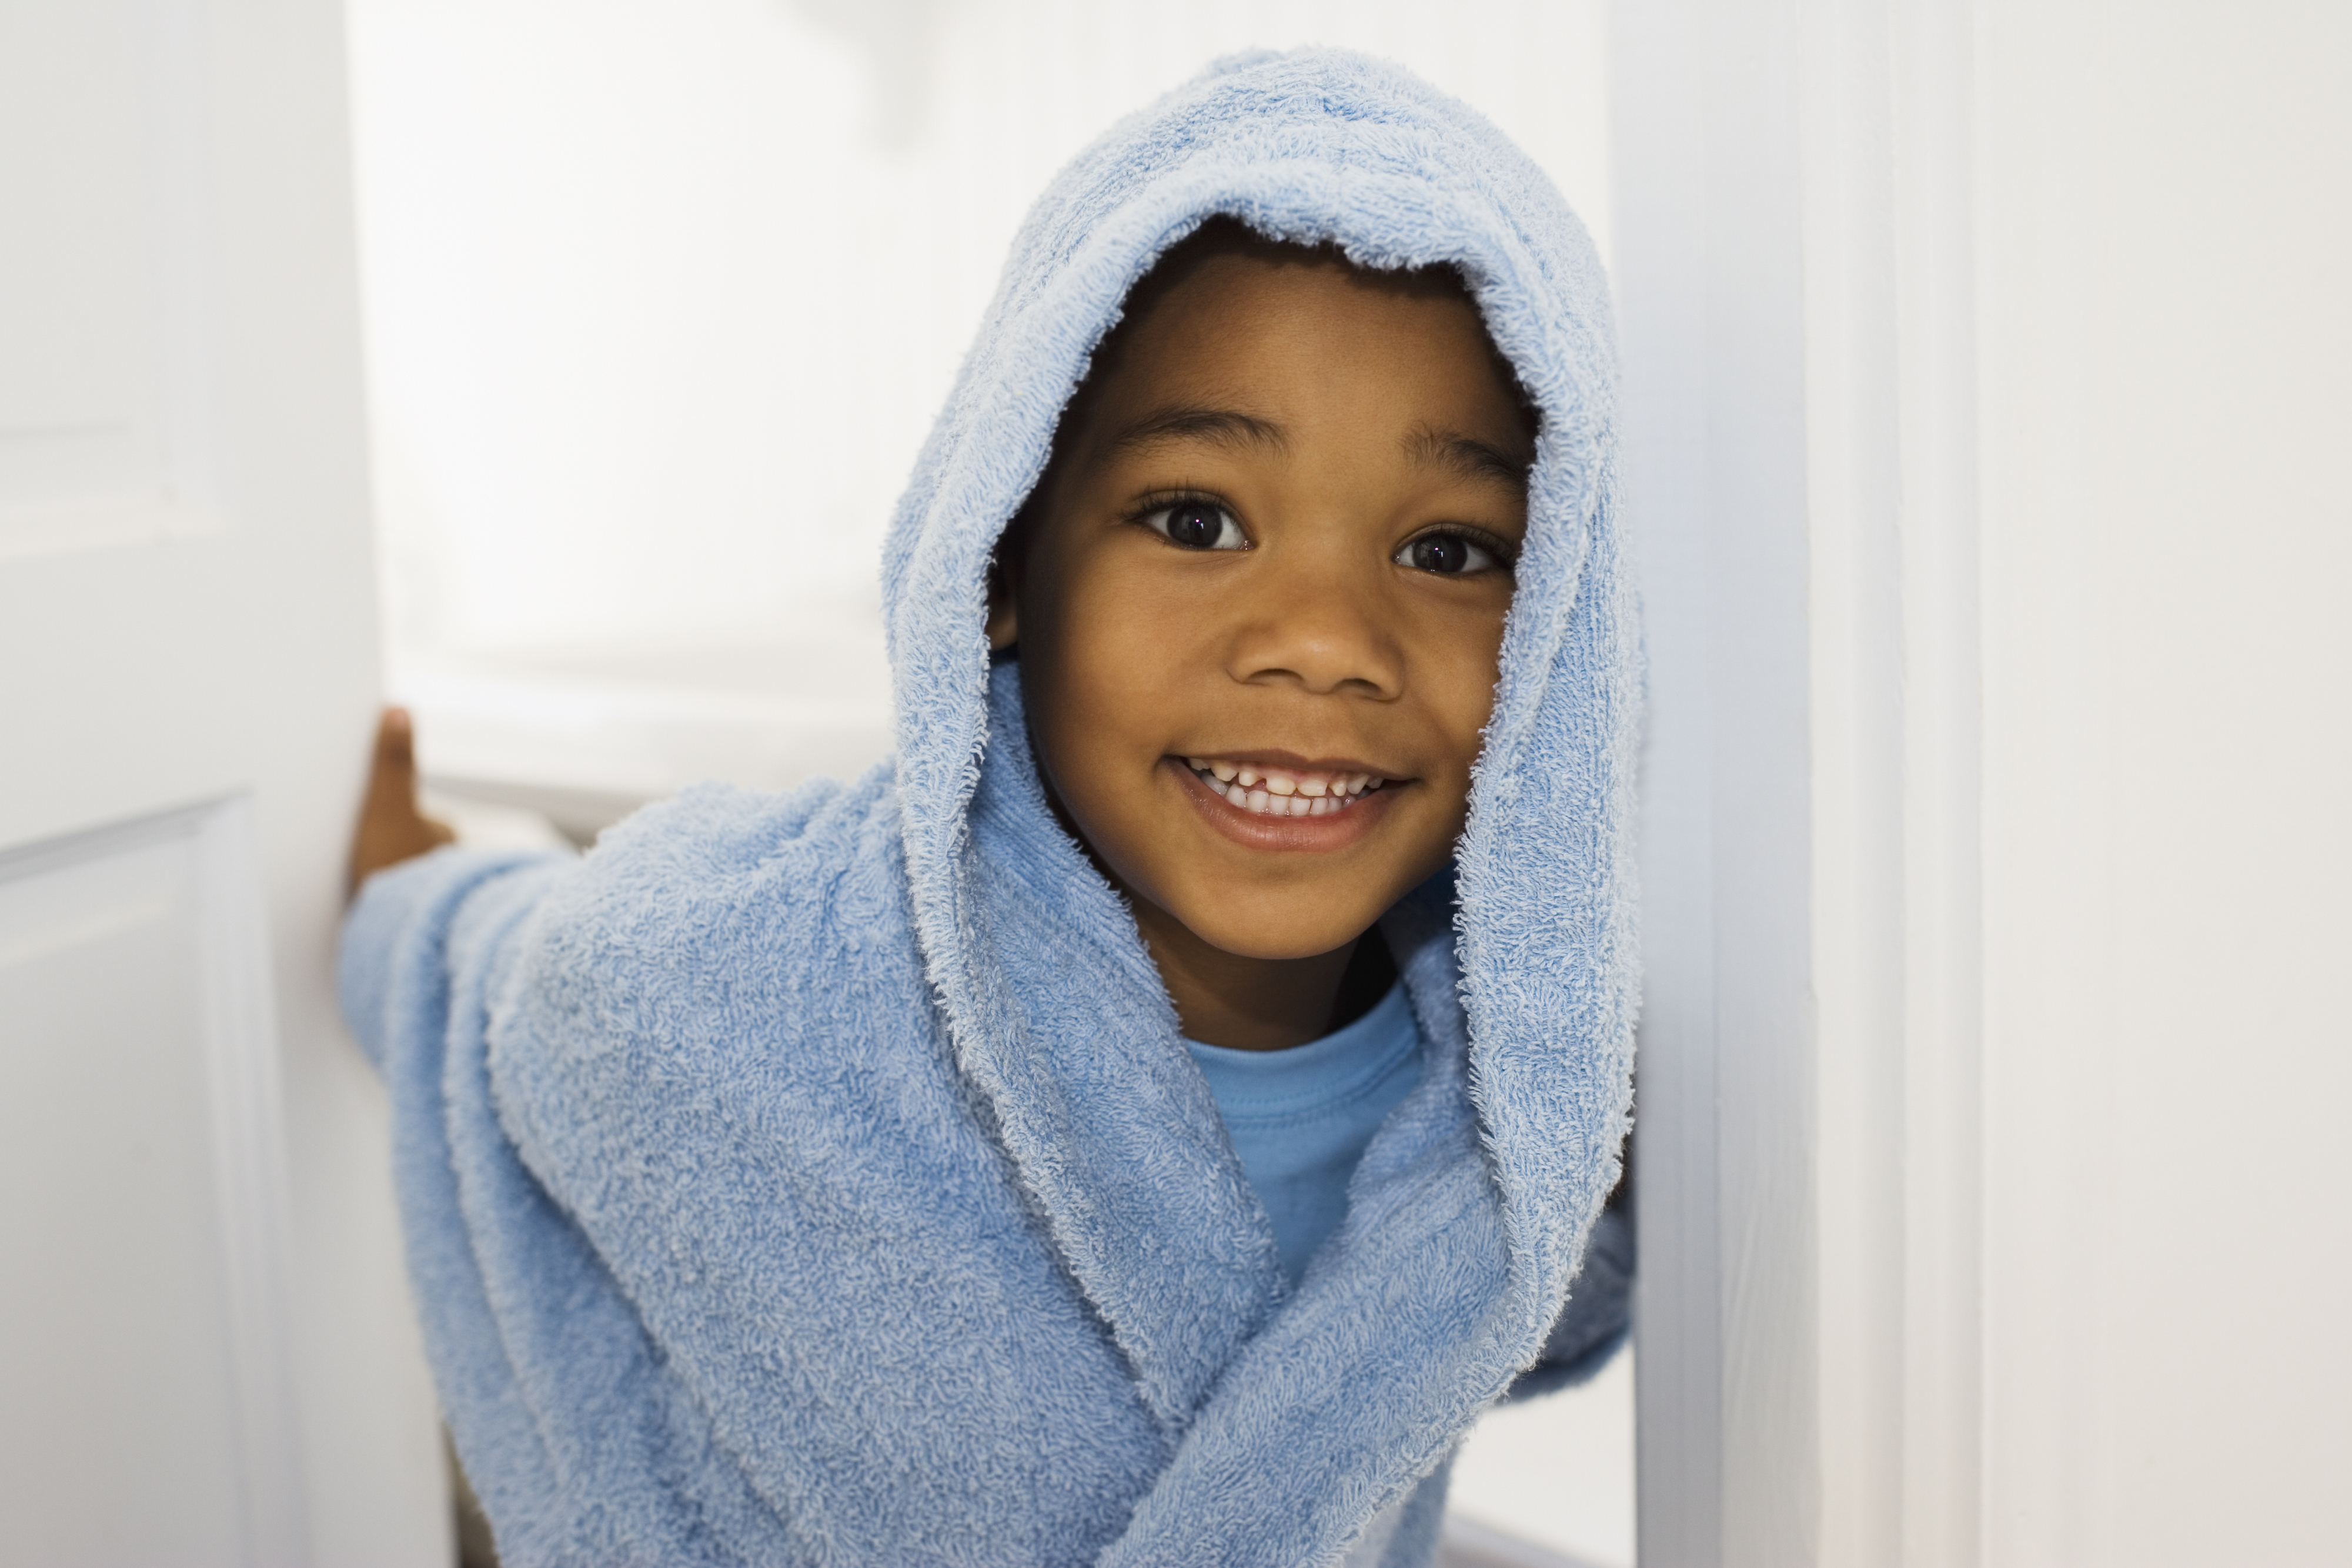 a kid in a blue bathrobe